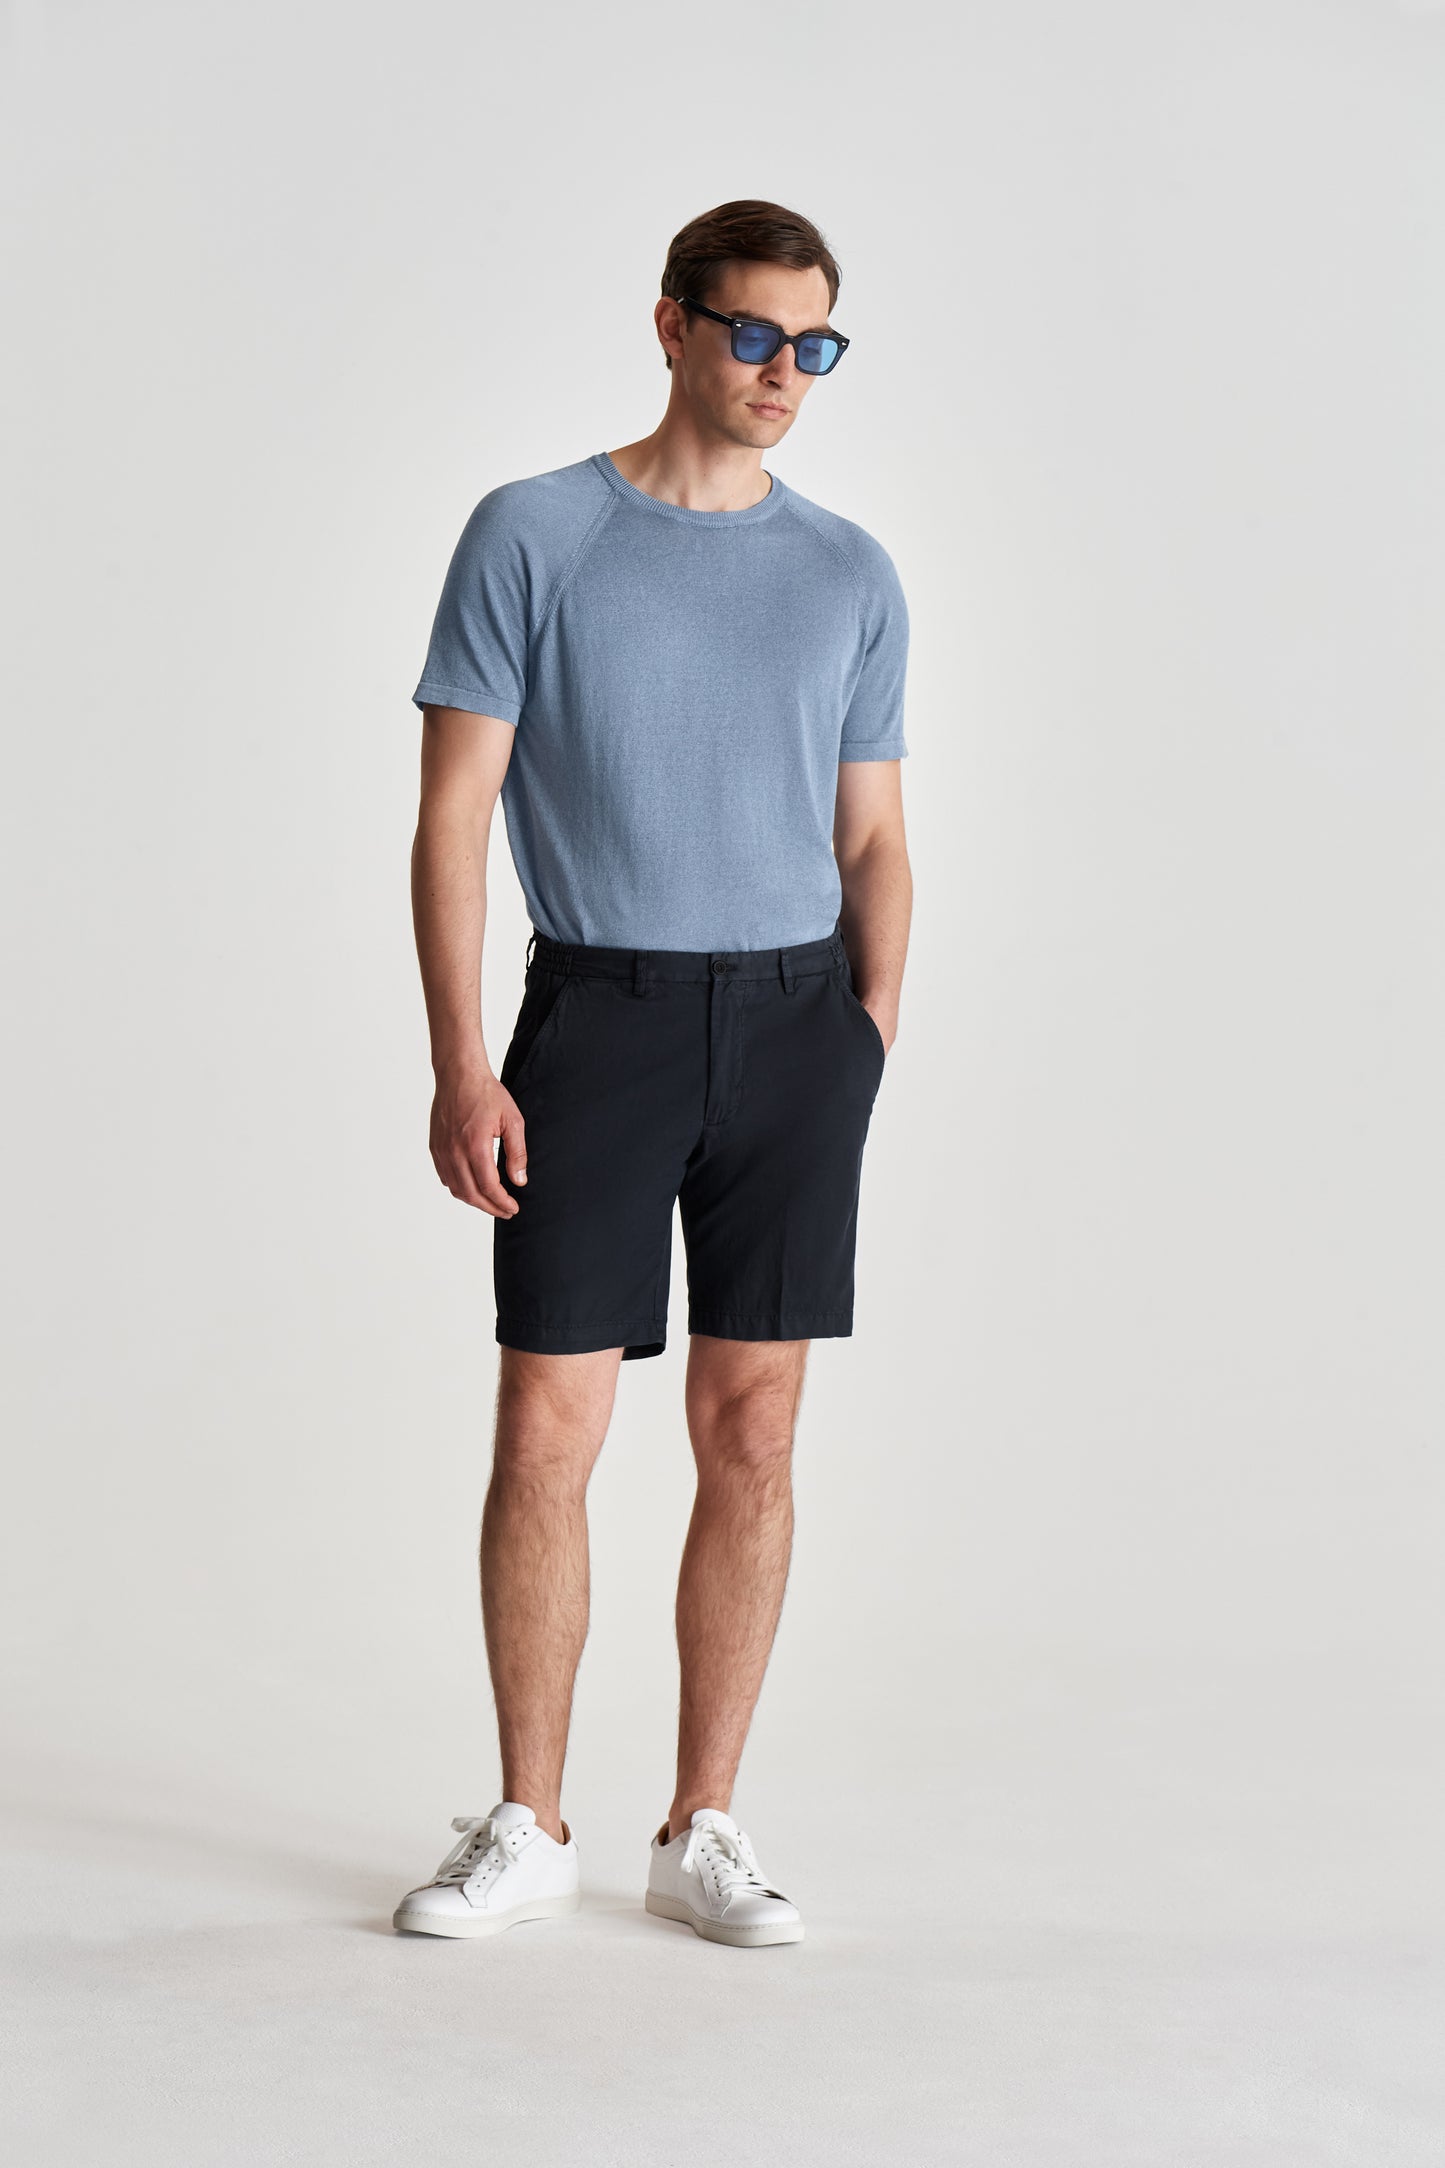 Knitted Cotton Raglan T-Shirt Slate Model Full Length Image